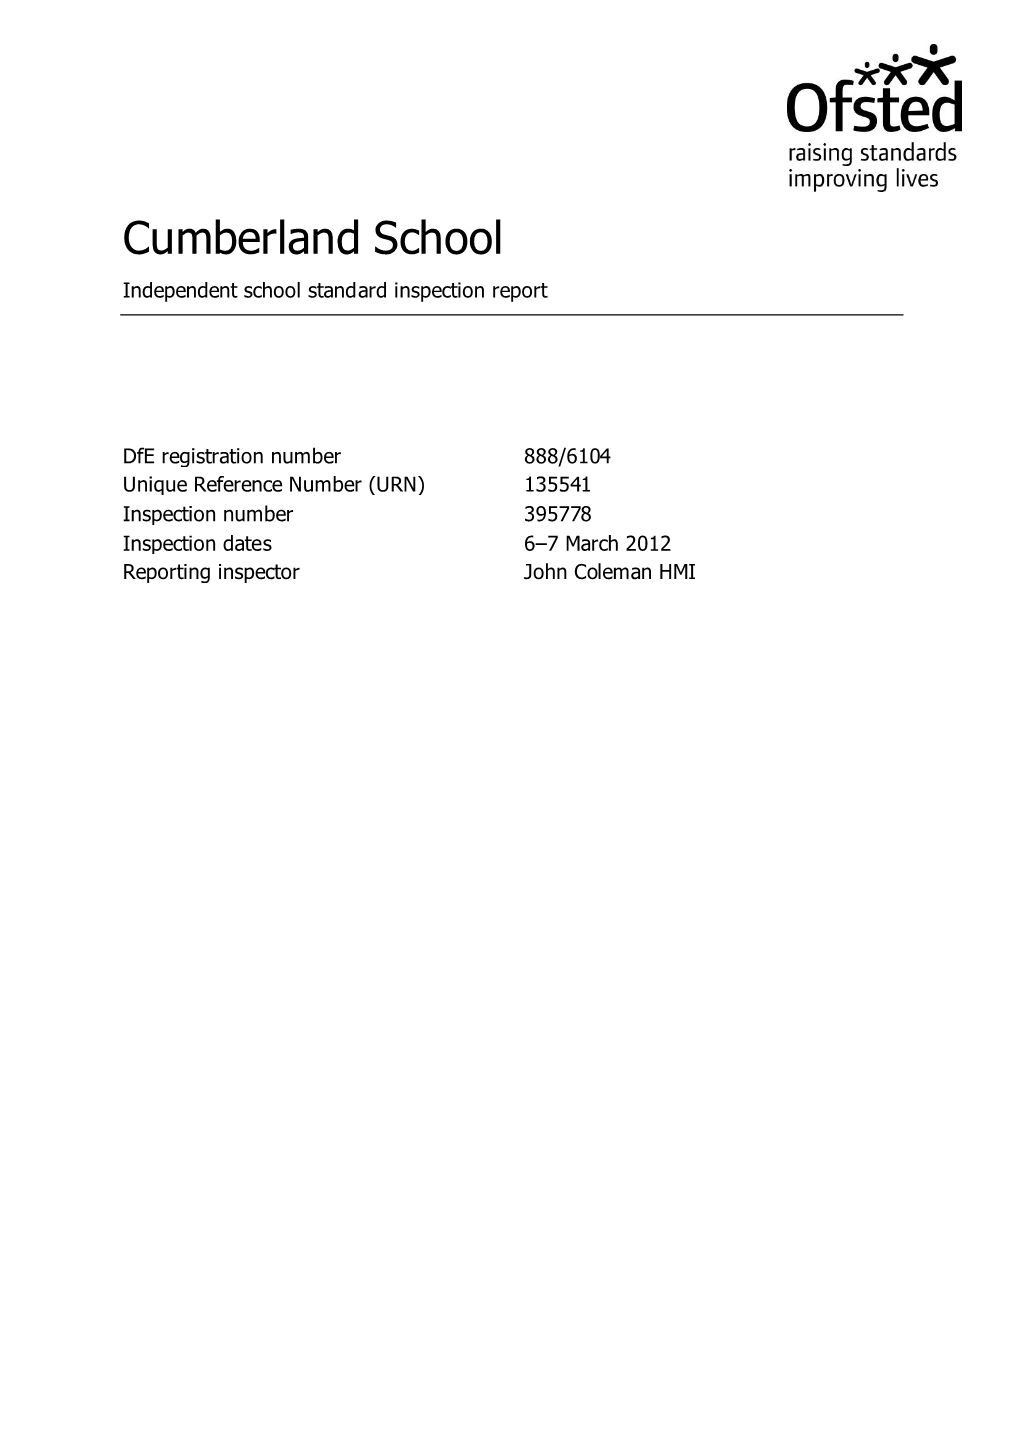 Cumberland School Independent School Standard Inspection Report